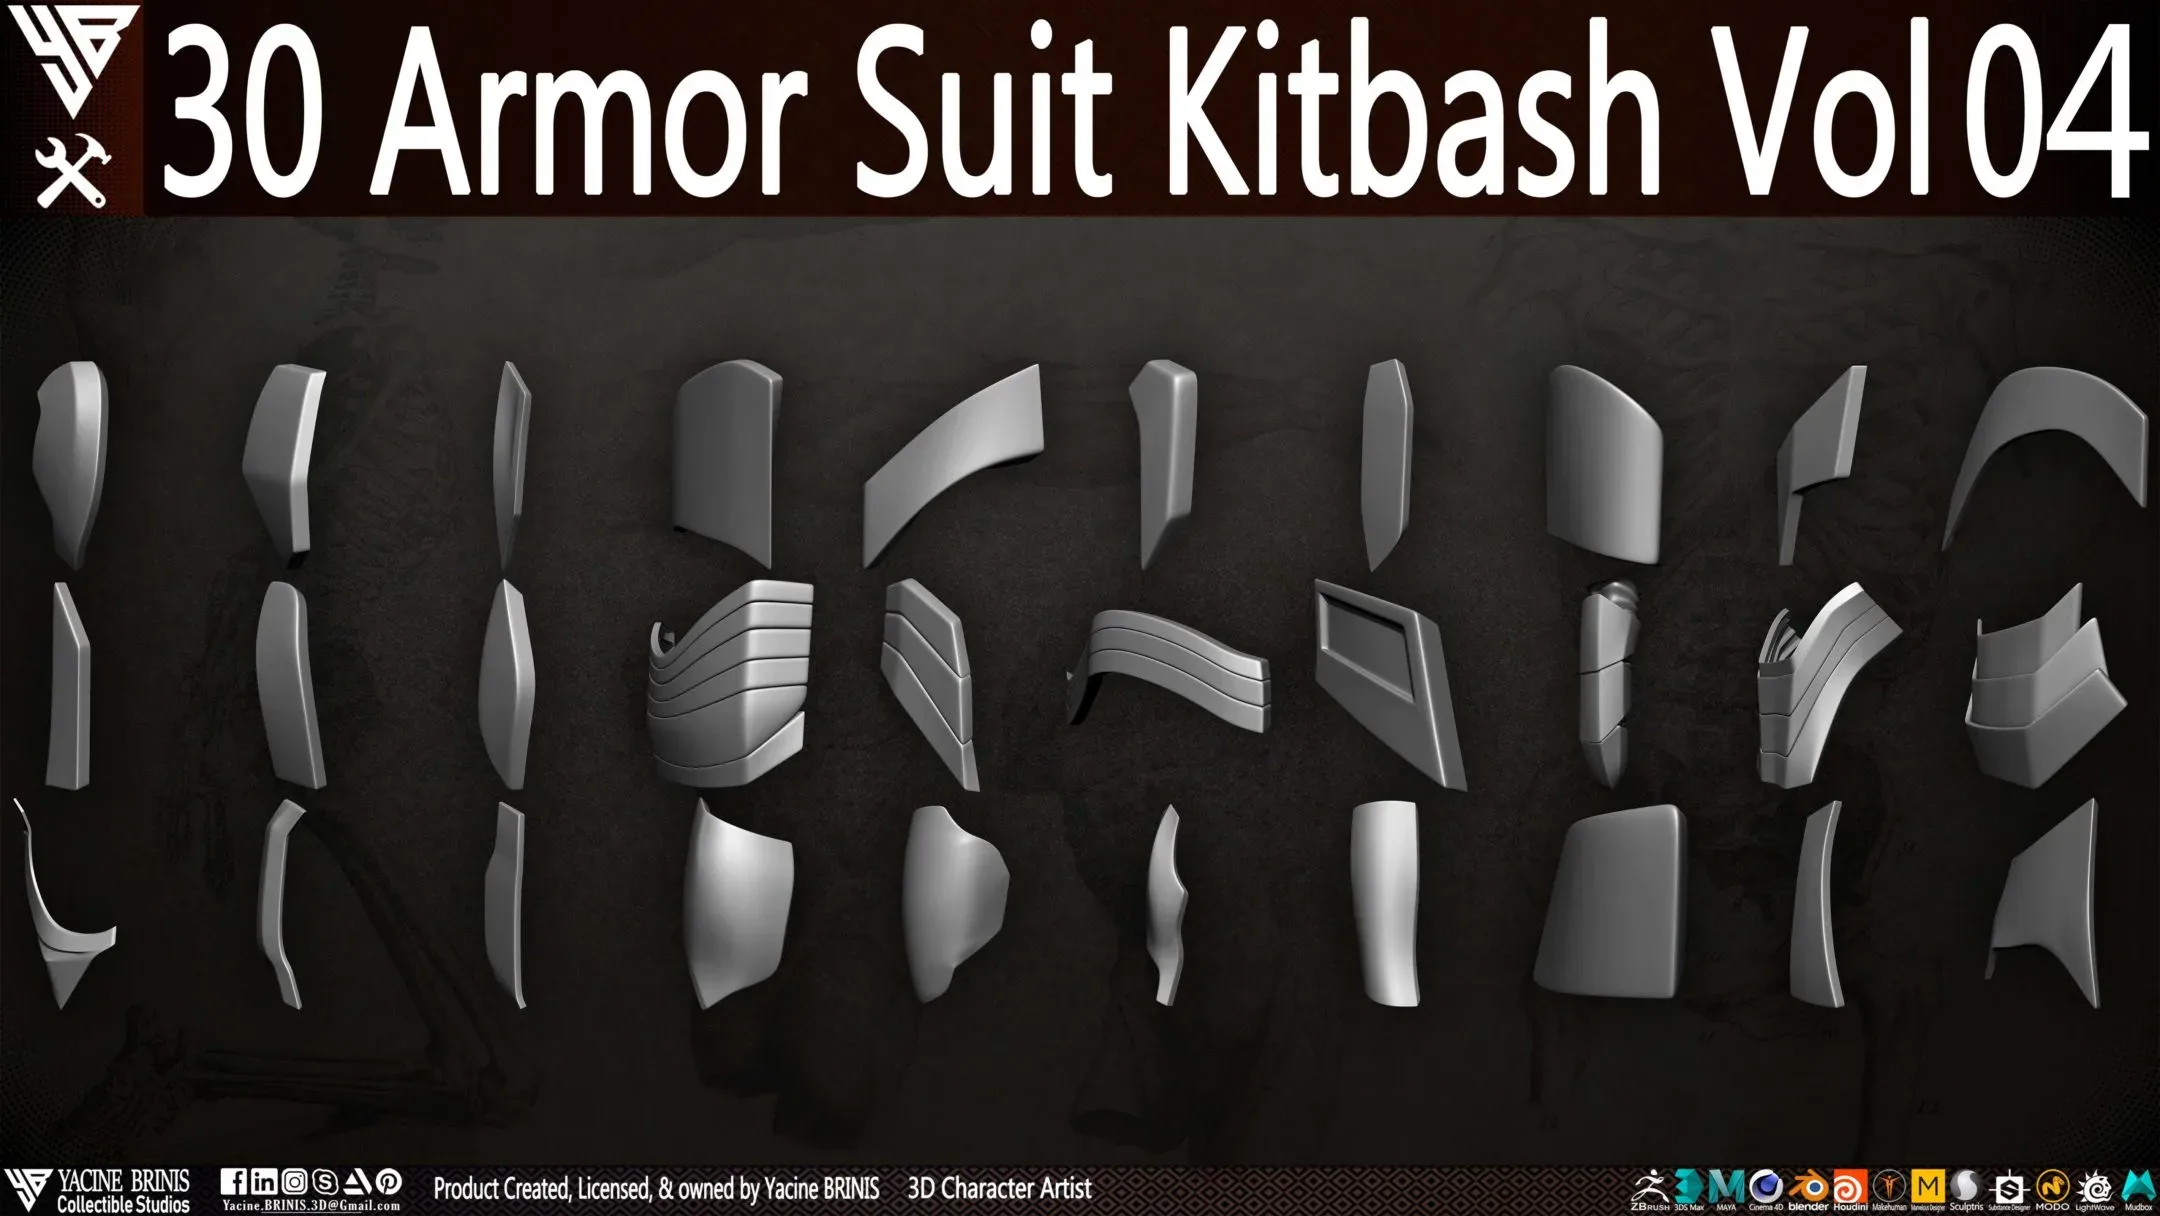 30 Armor Suit Kitbash Vol 04